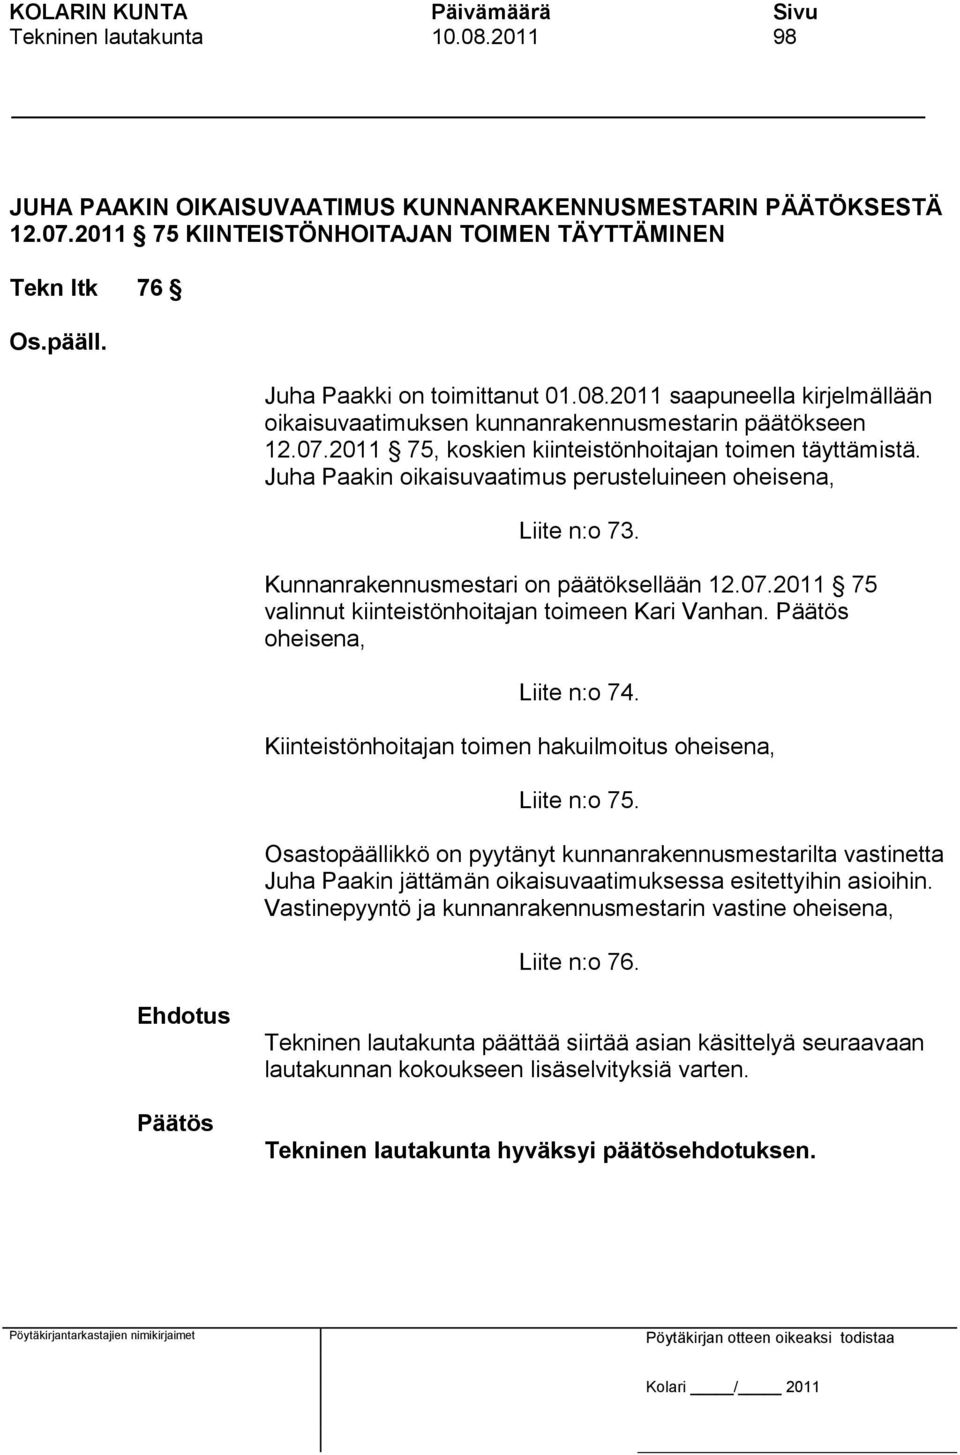 Juha Paakin oikaisuvaatimus perusteluineen oheisena, Liite n:o 73. Kunnanrakennusmestari on päätöksellään 12.07.2011 75 valinnut kiinteistönhoitajan toimeen Kari Vanhan. oheisena, Liite n:o 74.